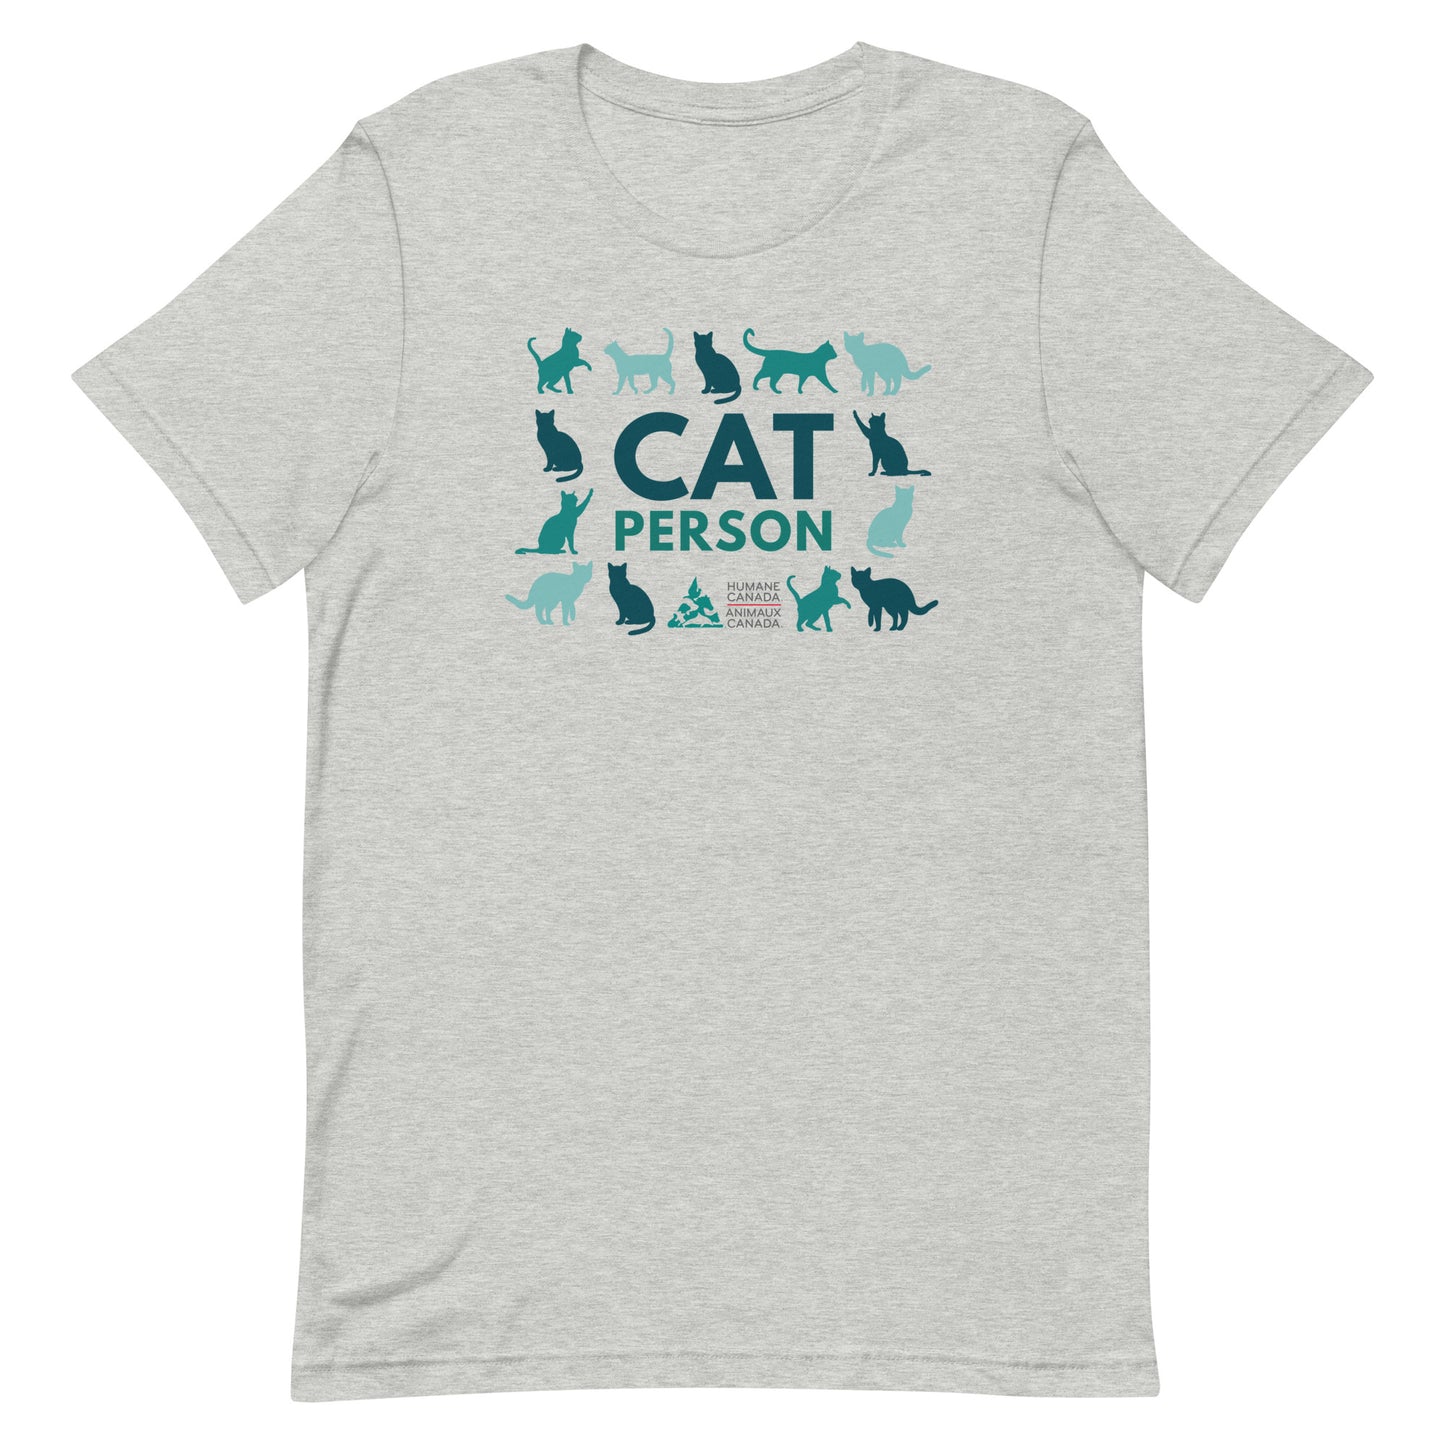 Cat Person - Unisex T-Shirt